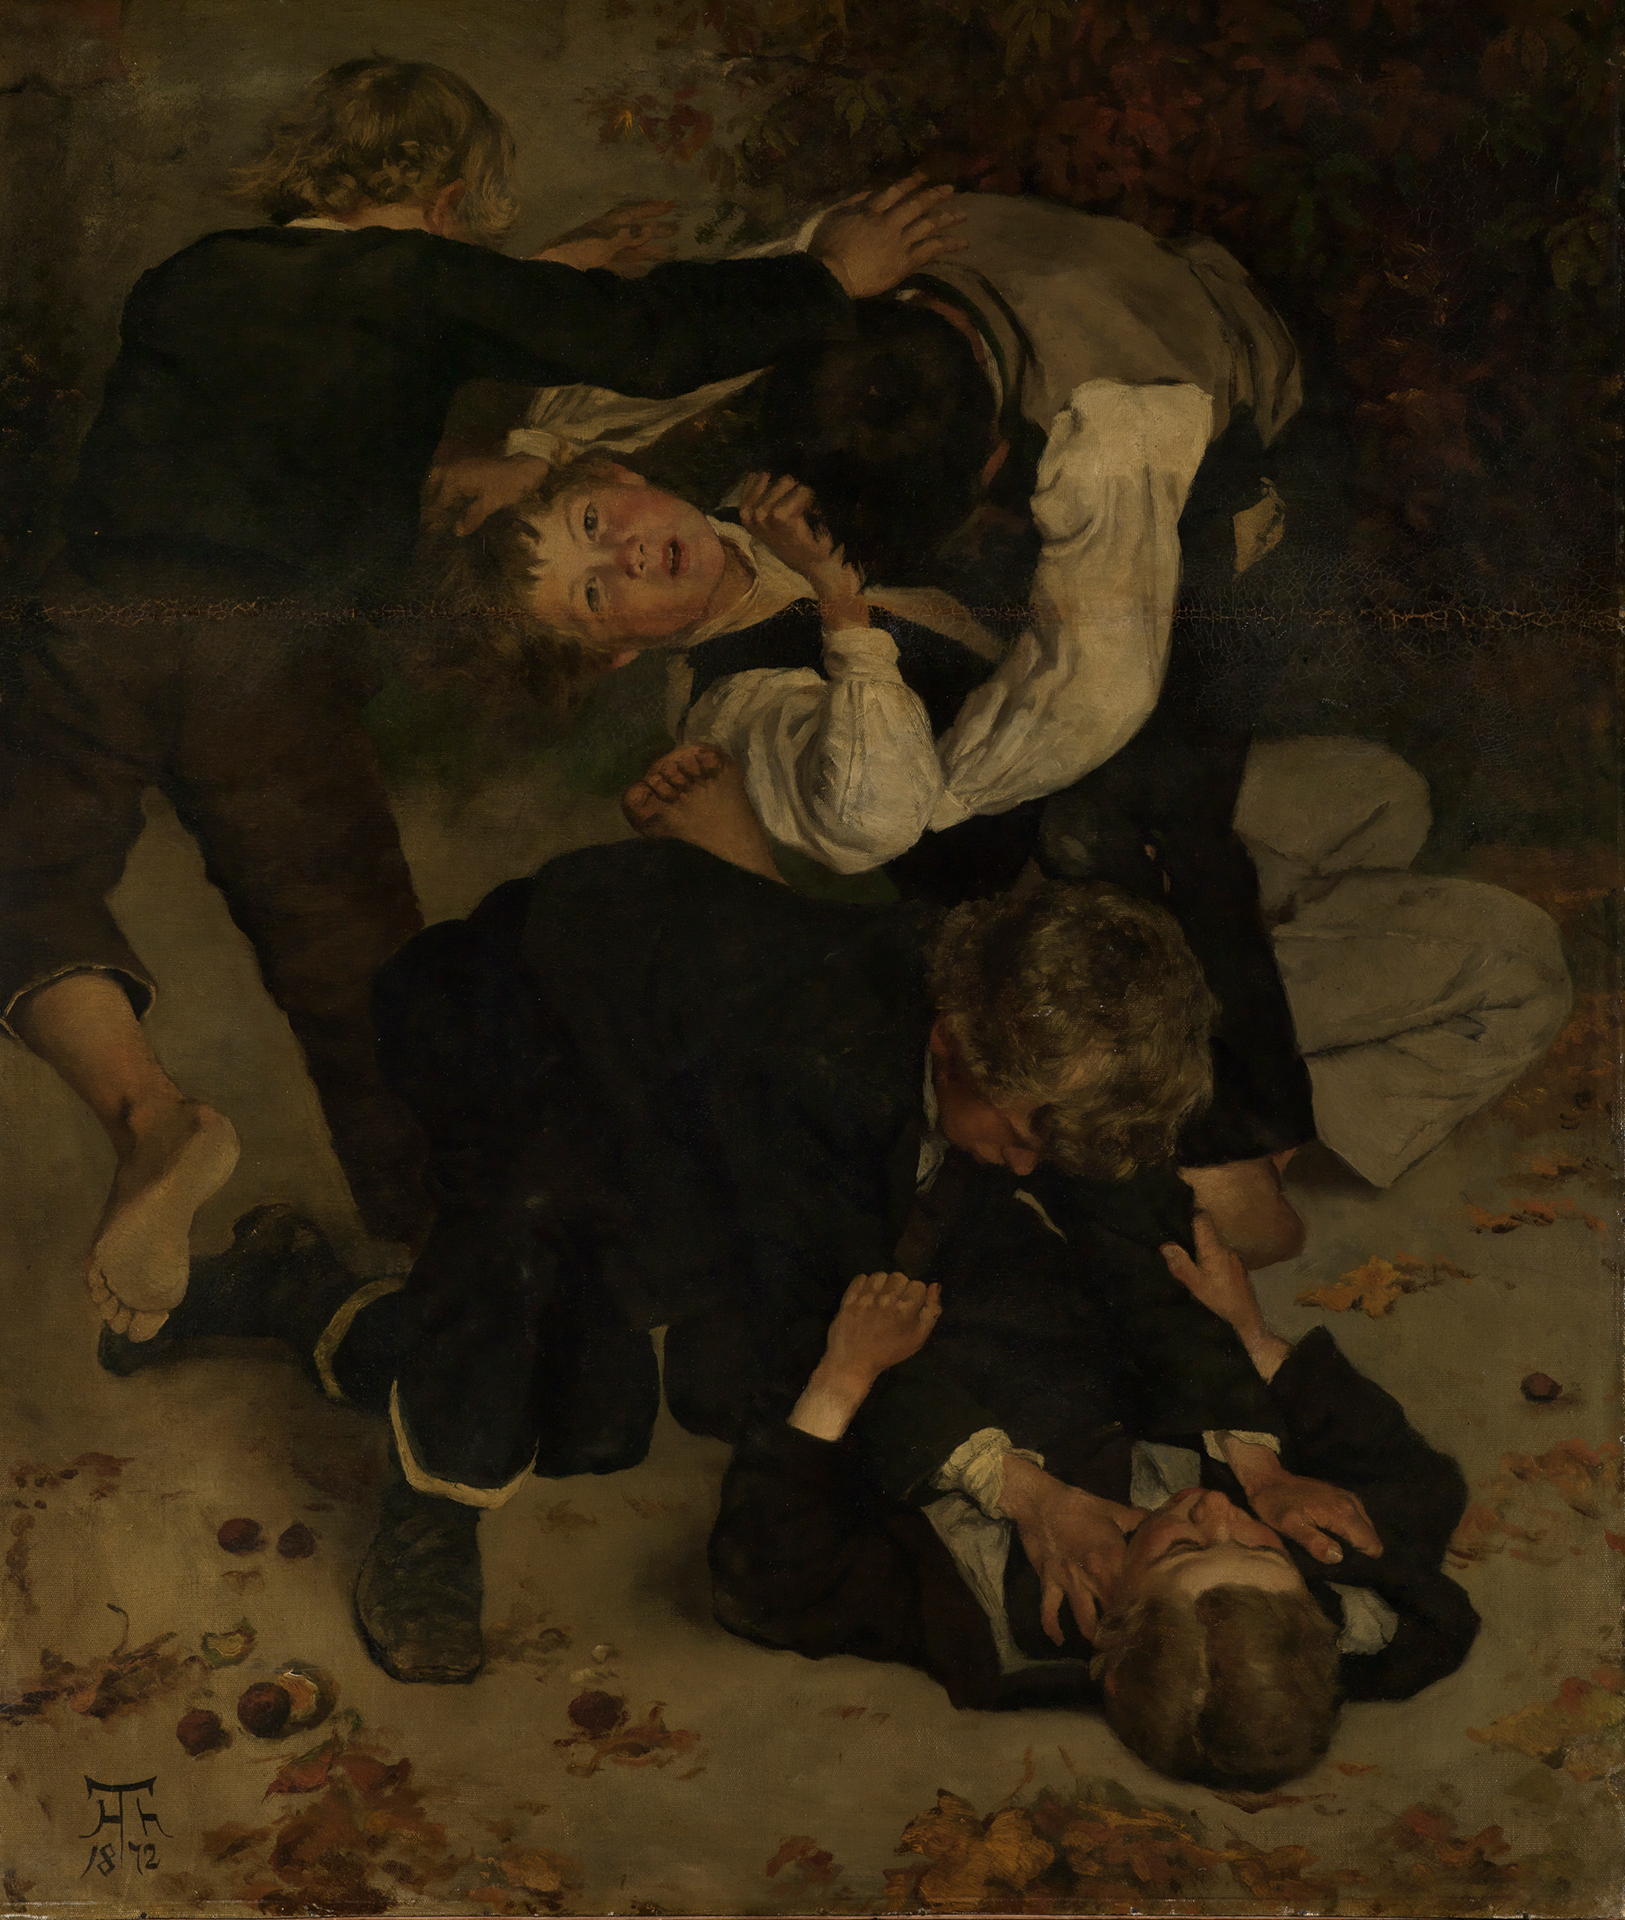 Gemälde von Hans Thoma, das fünf Kinder zeigt, die miteinander raufen